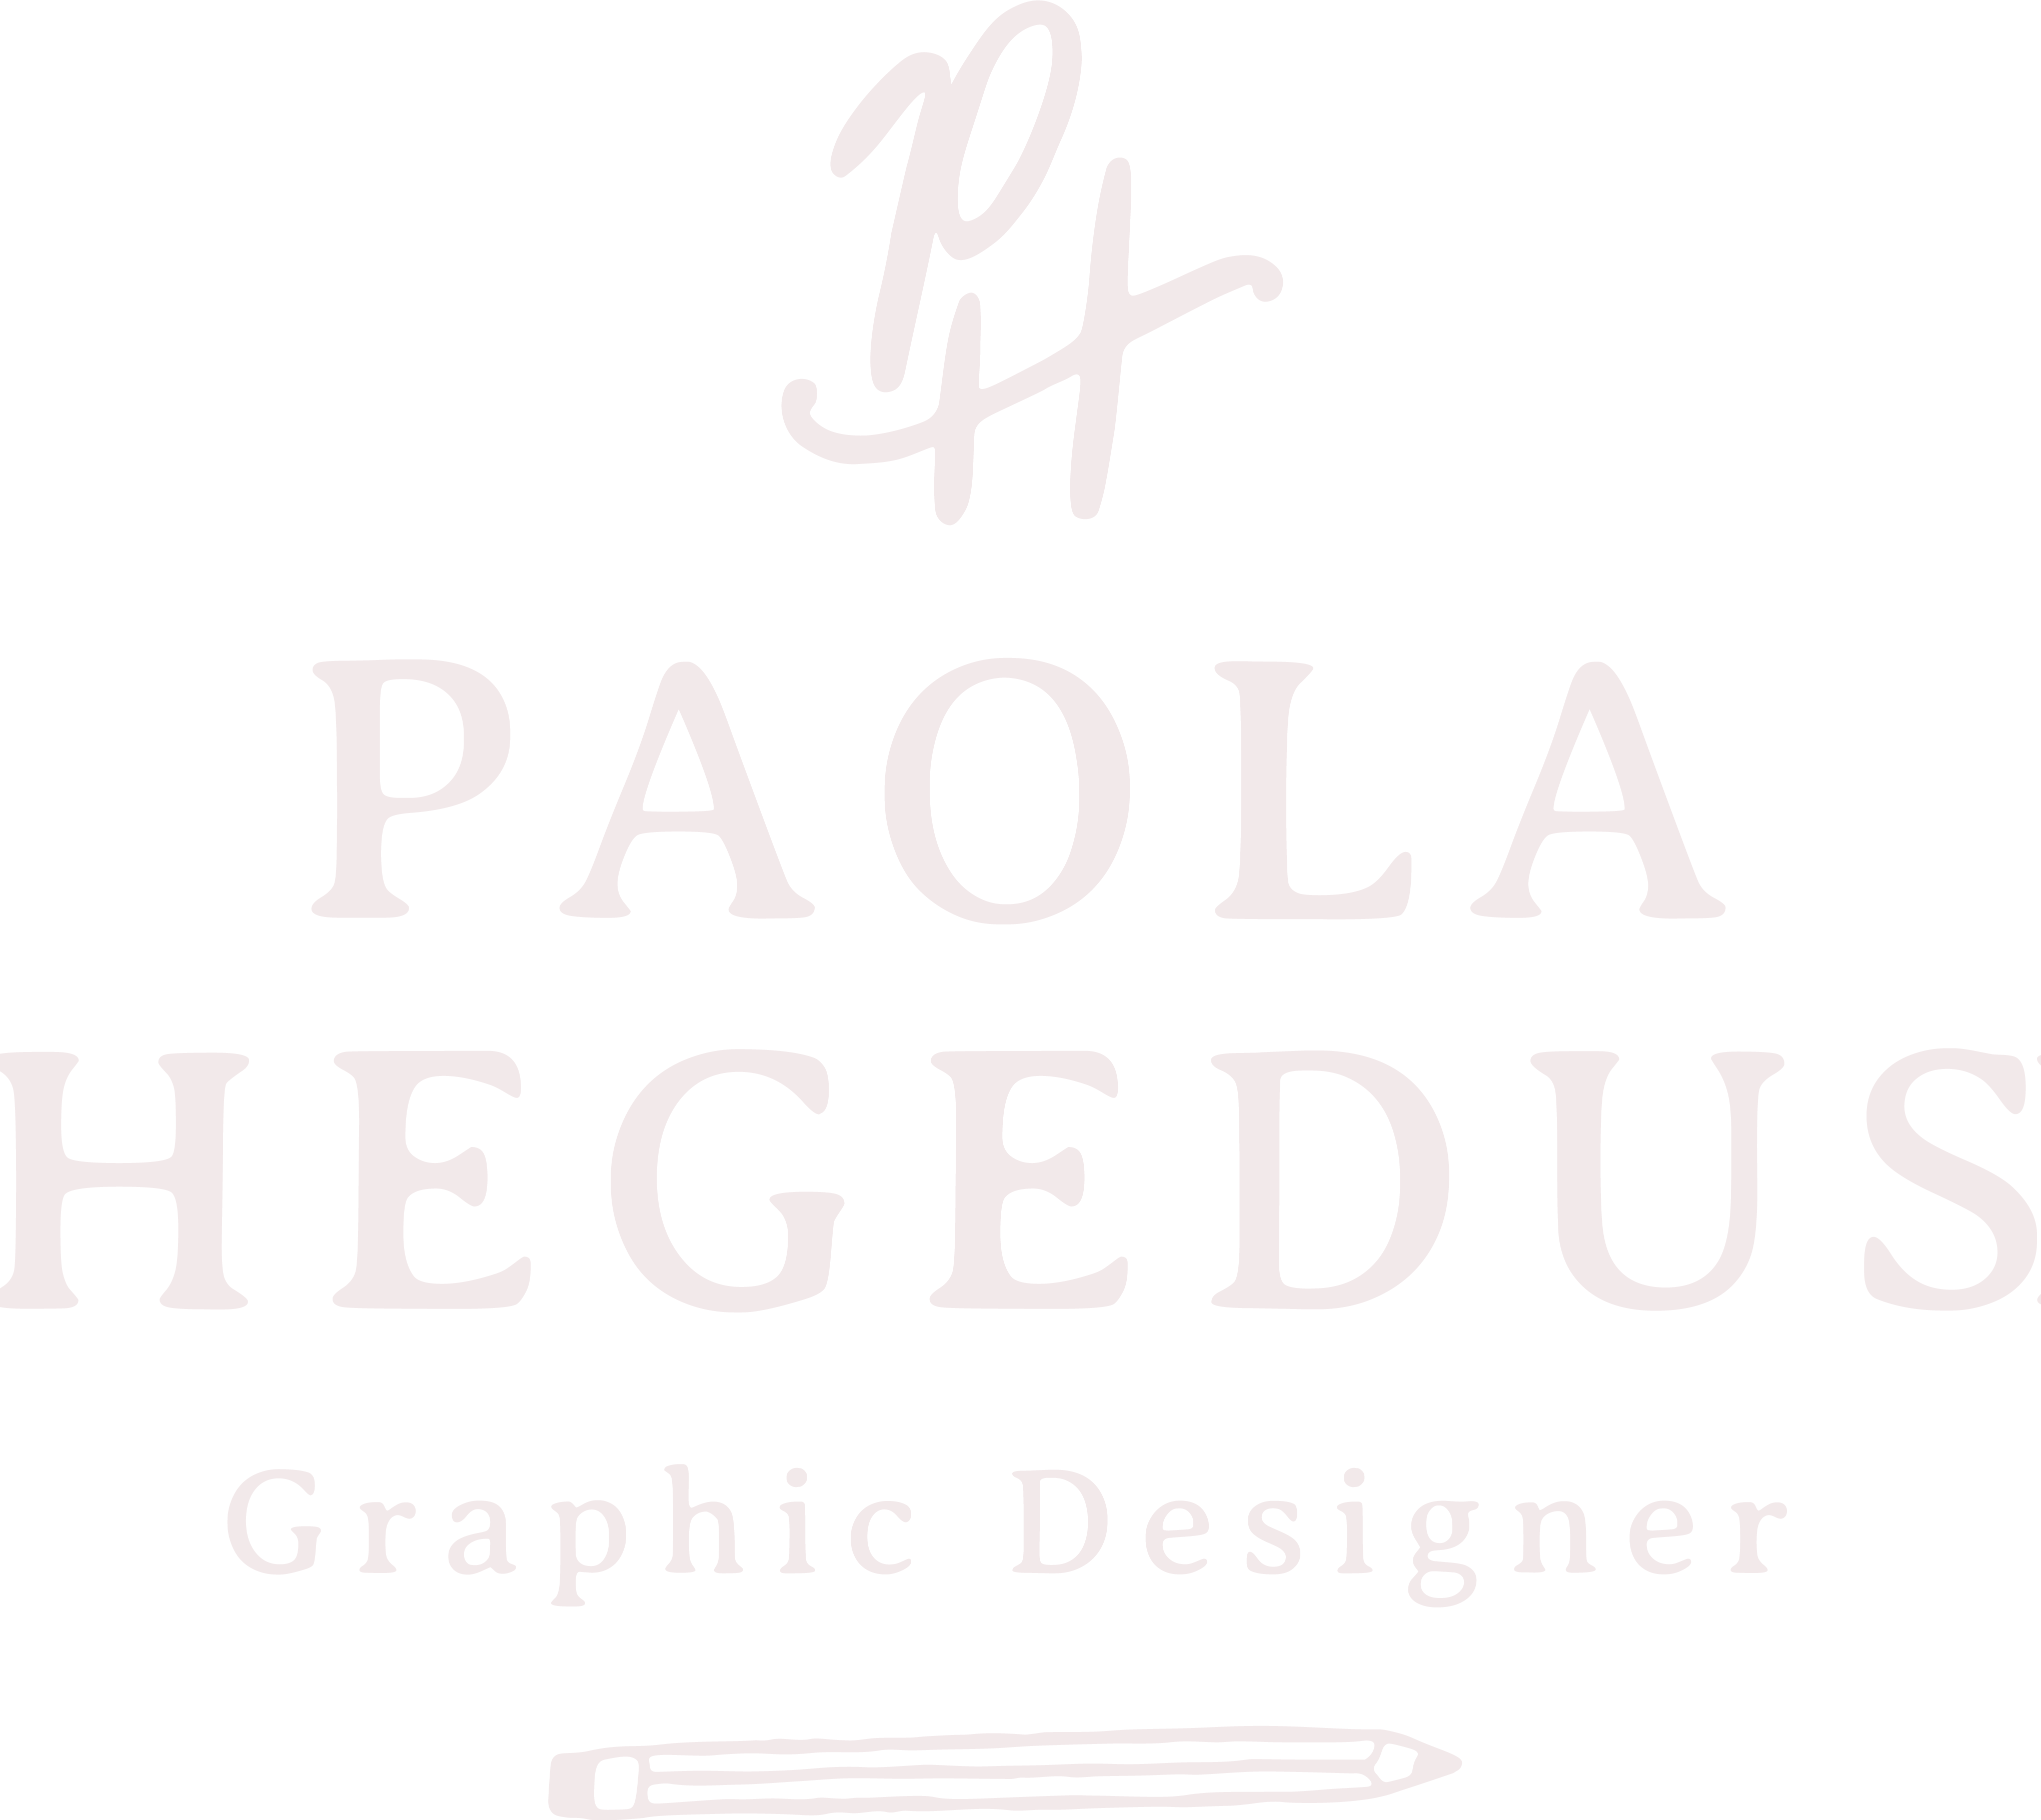 Paola Hegedus